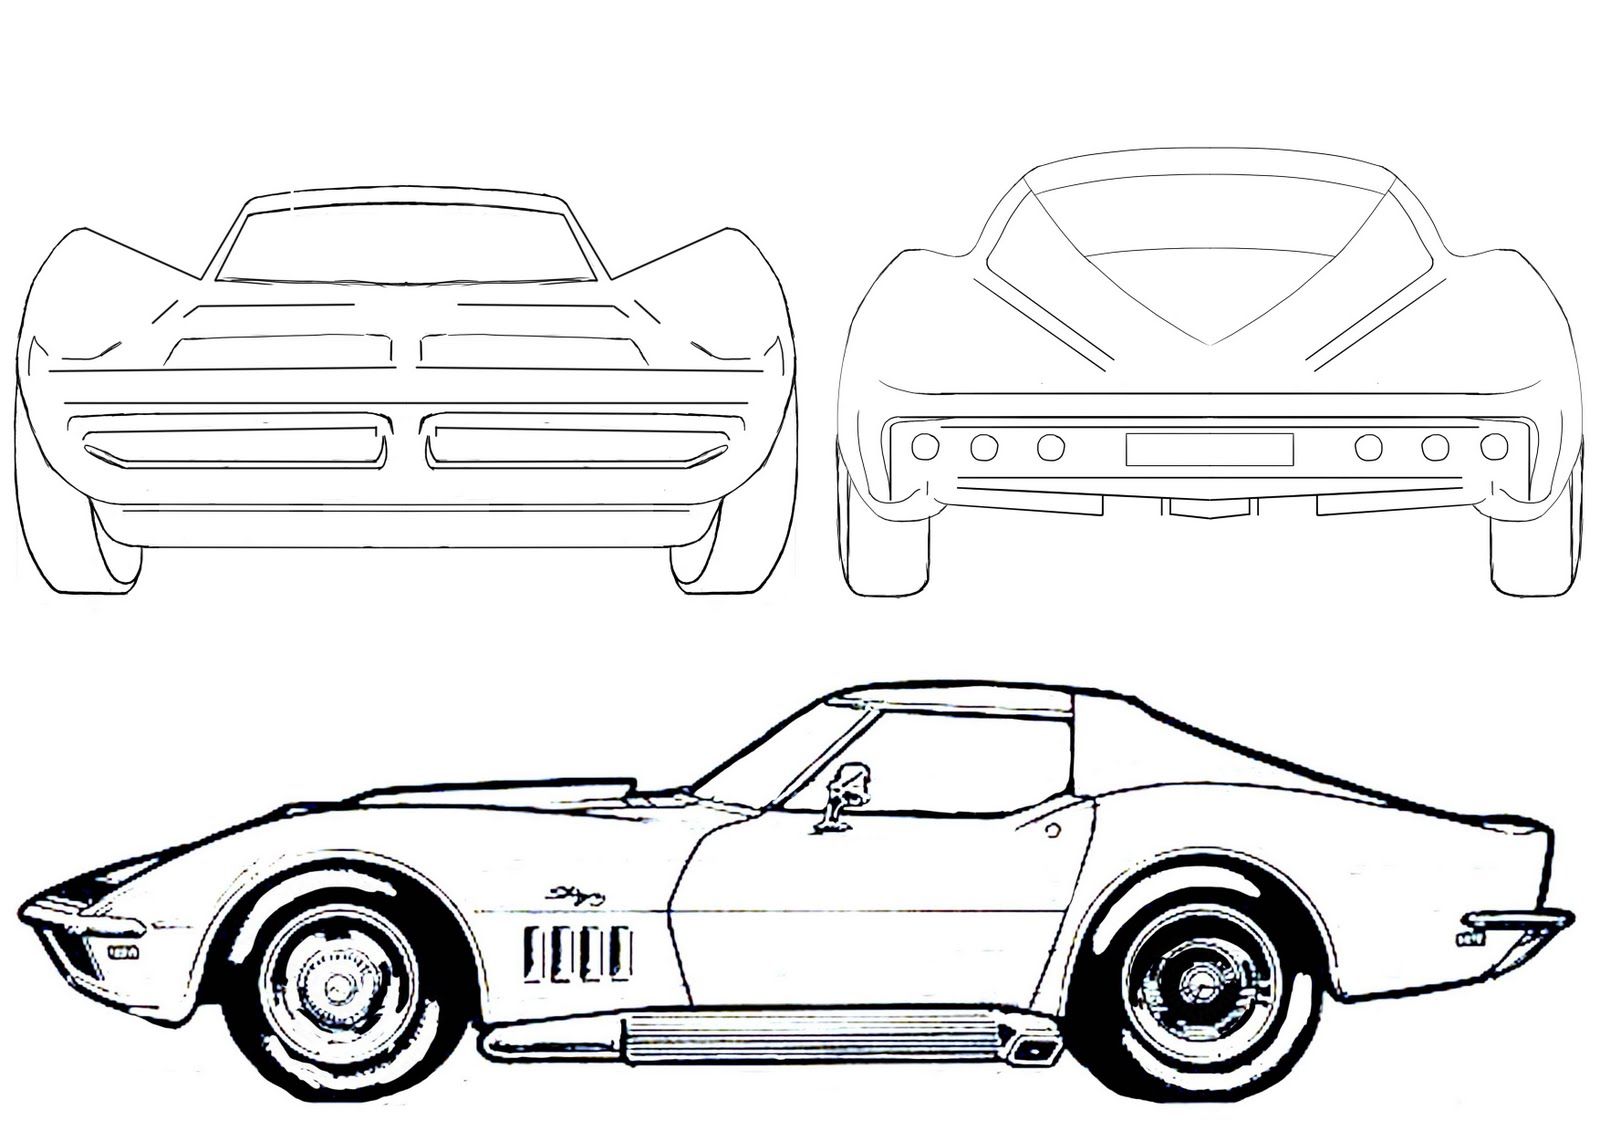 Cars drawings